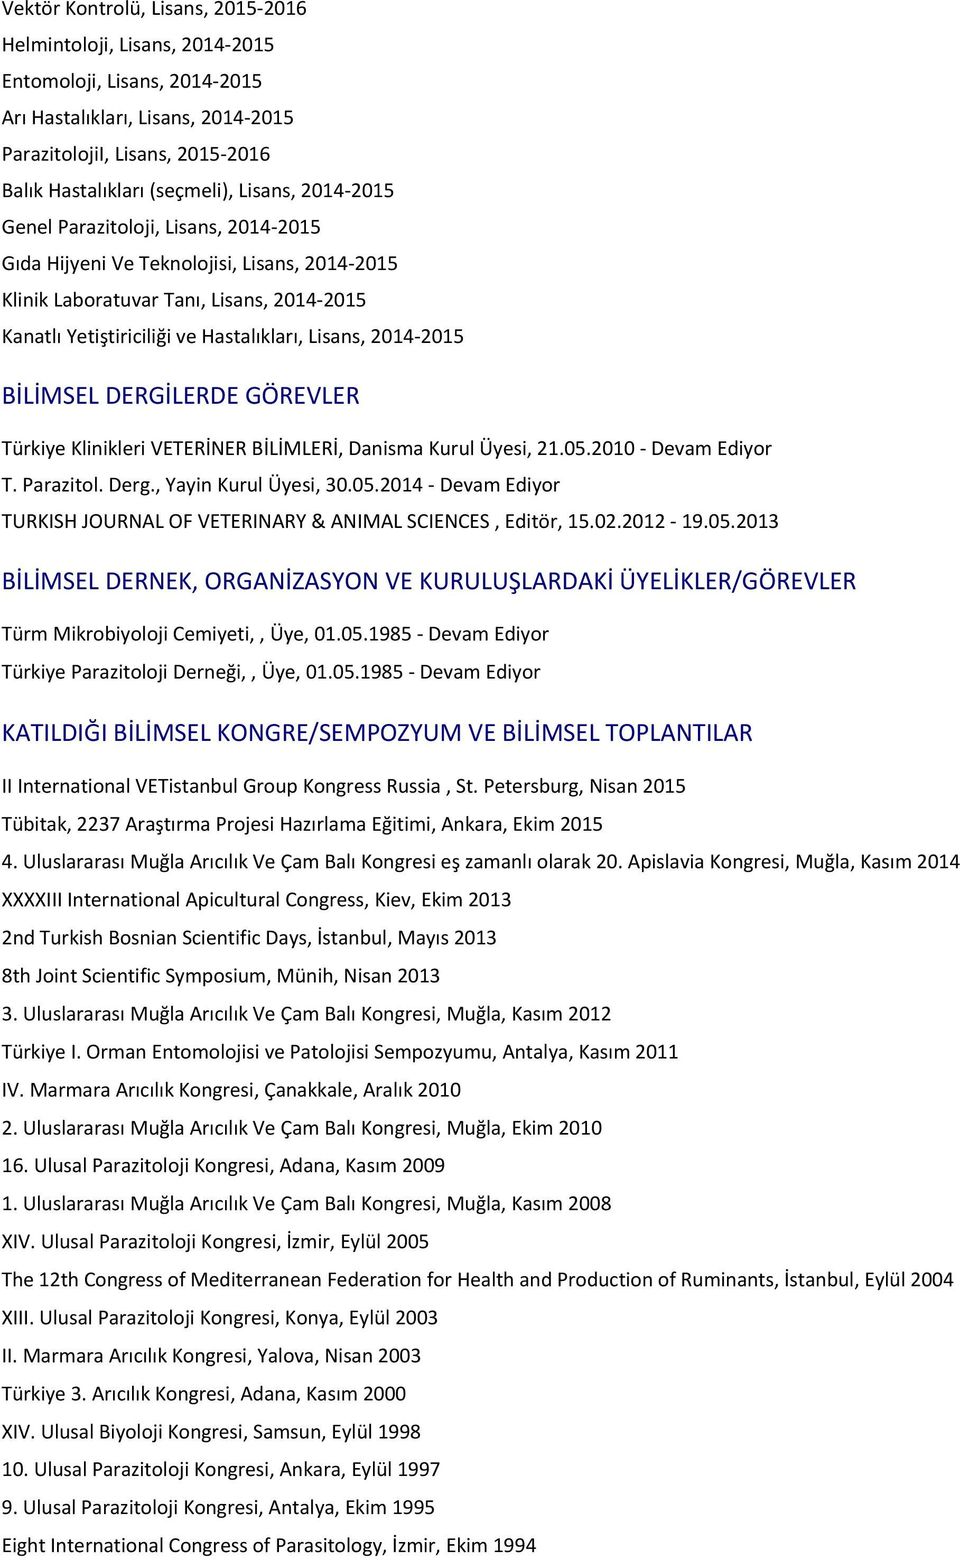 2014-2015 BİLİMSEL DERGİLERDE GÖREVLER Türkiye Klinikleri VETERİNER BİLİMLERİ, Danisma Kurul Üyesi, 21.05.2010 - Devam Ediyor T. Parazitol. Derg., Yayin Kurul Üyesi, 30.05.2014 - Devam Ediyor TURKISH JOURNAL OF VETERINARY & ANIMAL SCIENCES, Editör, 15.